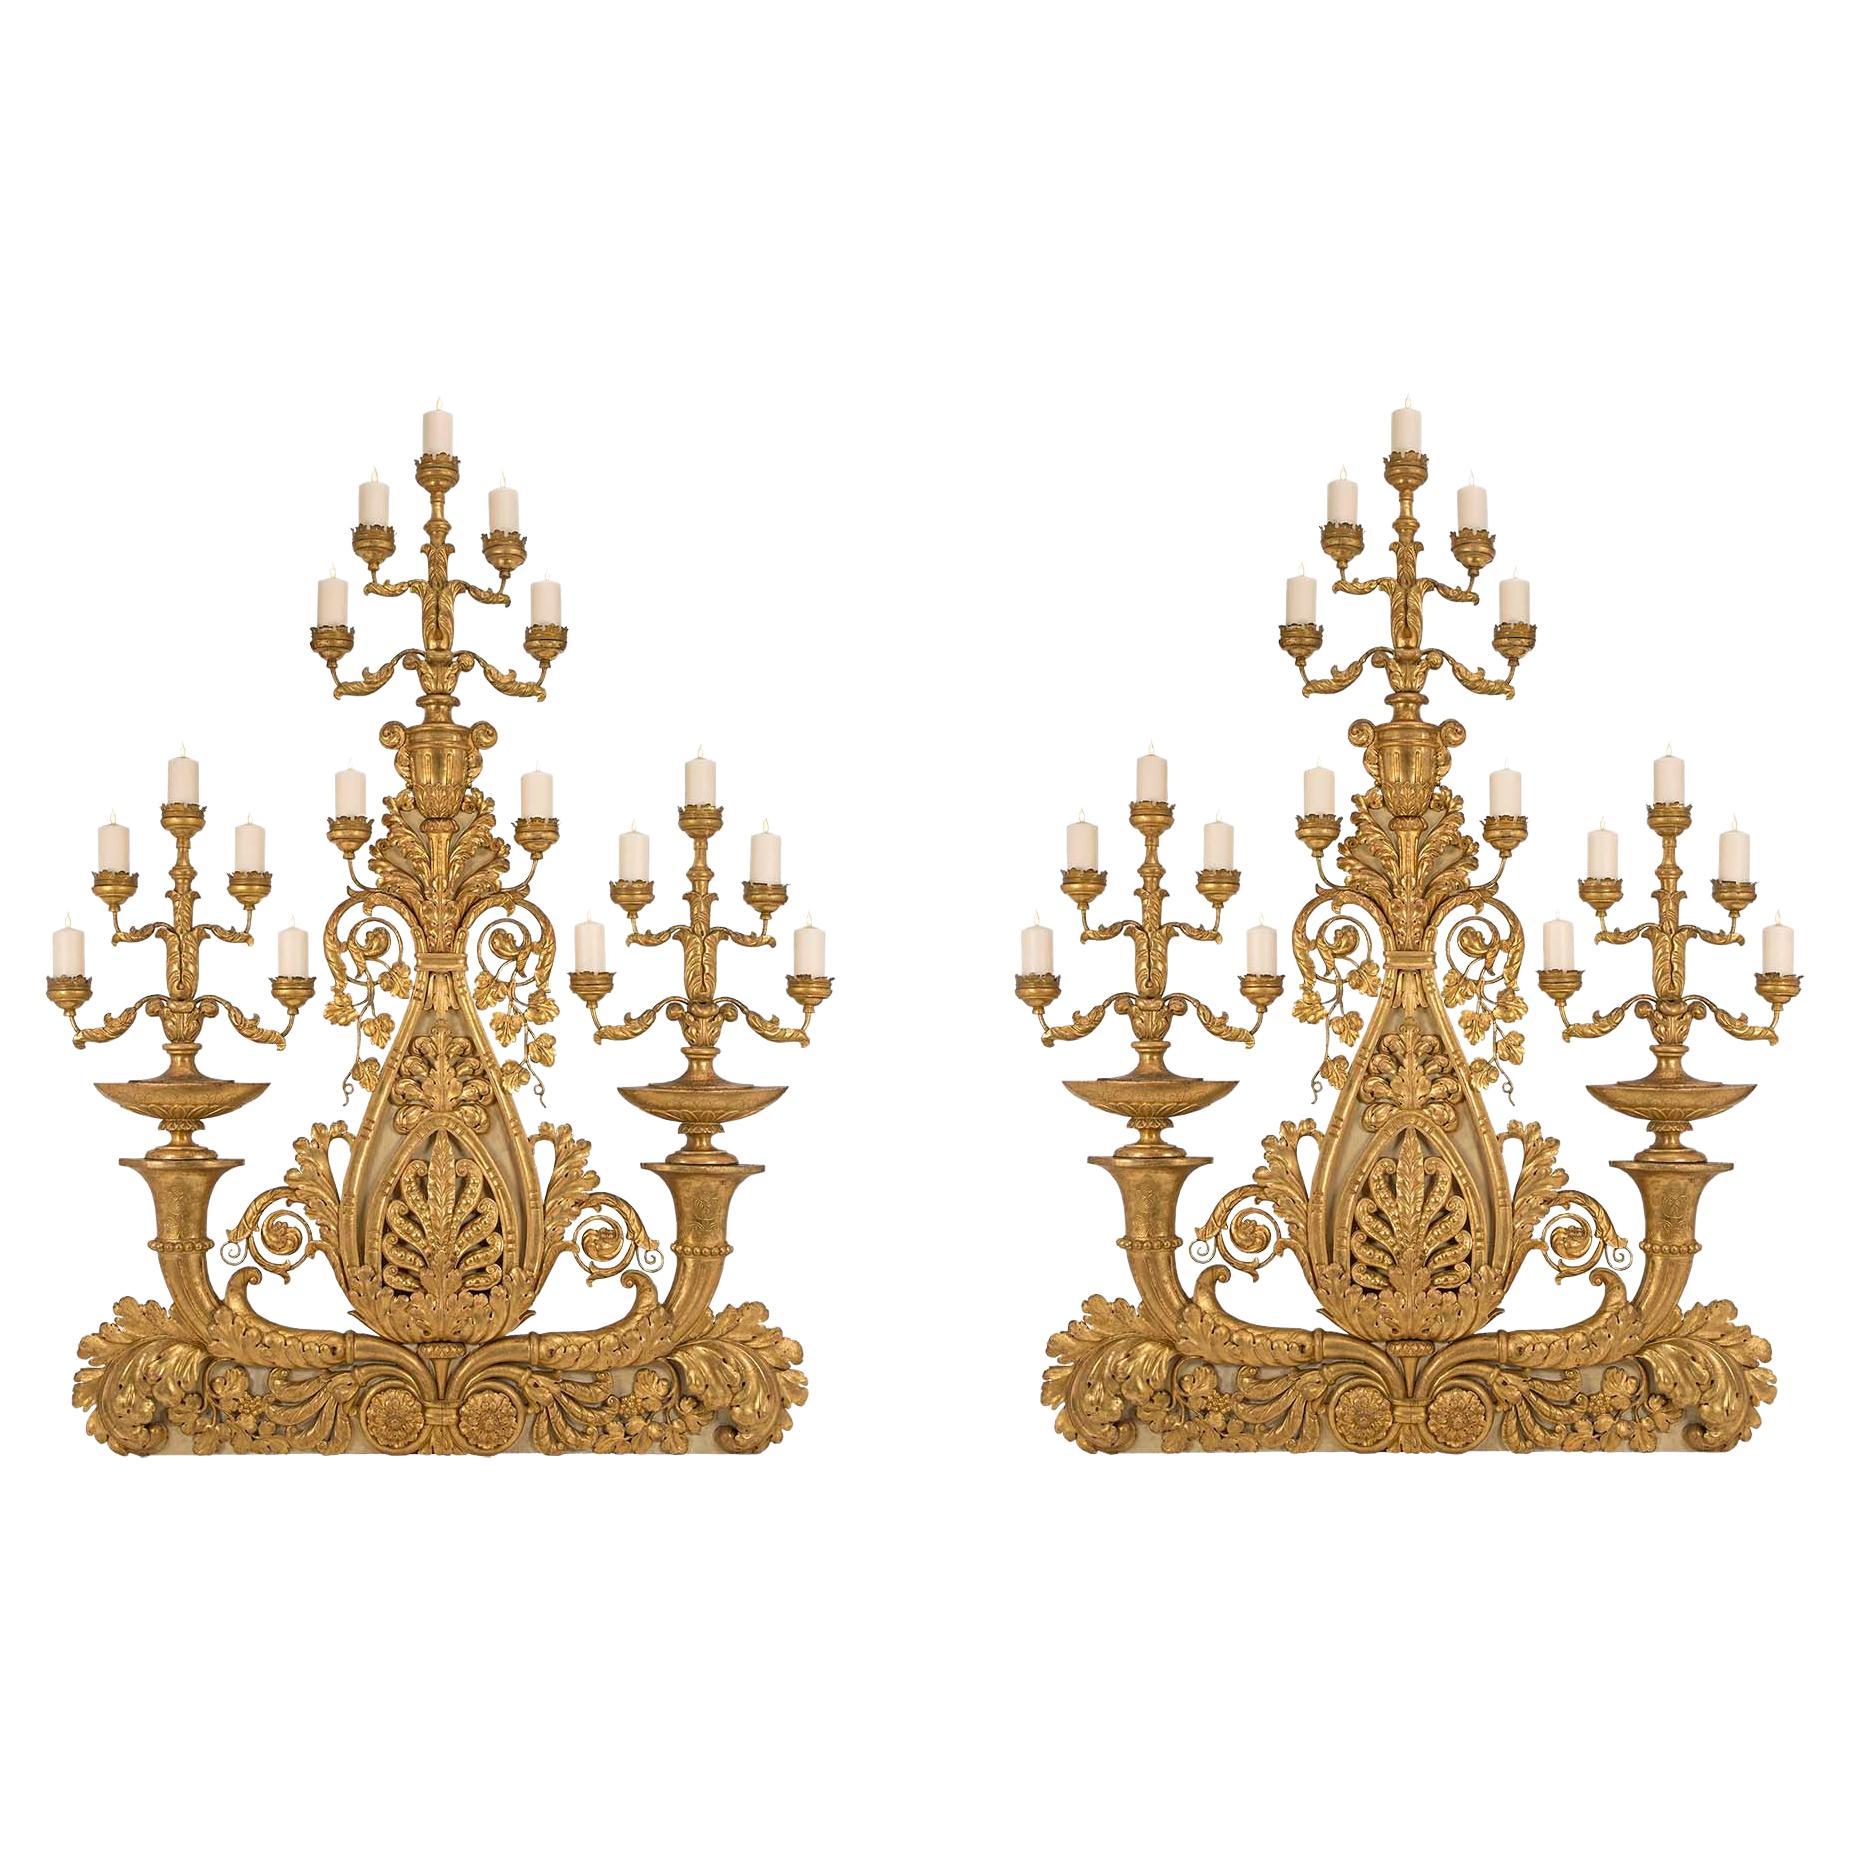 Candélabres toscans monumentaux italiens du 18ème siècle en bois doré et métal doré